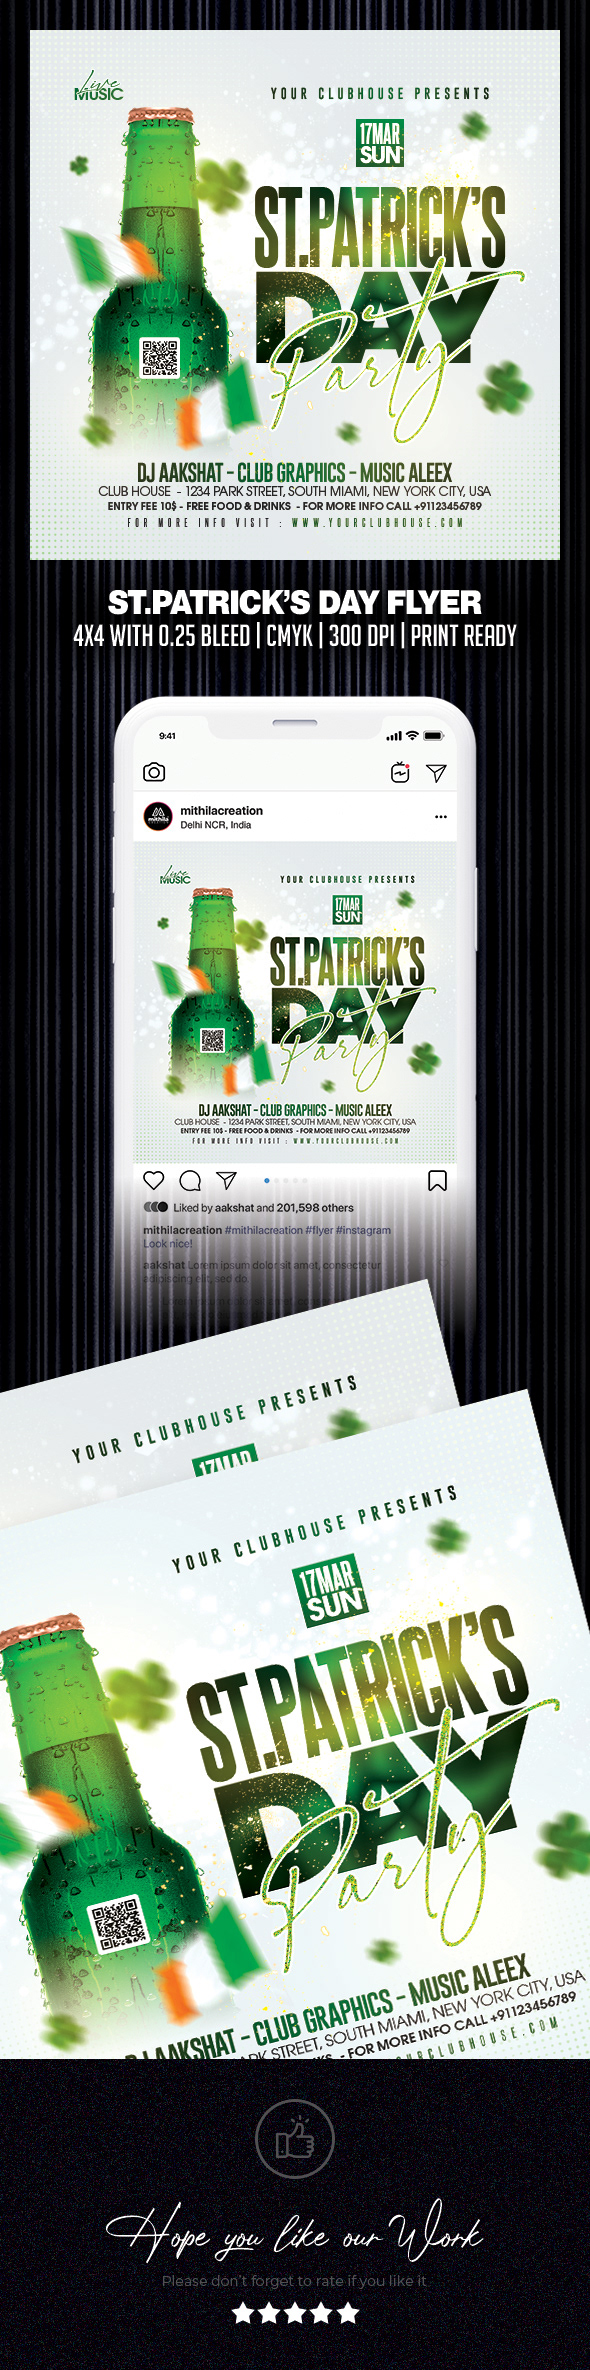 St Patricks Day st patrick's day patricks day saint patrick st patricks irish club instagram Social media post flyer